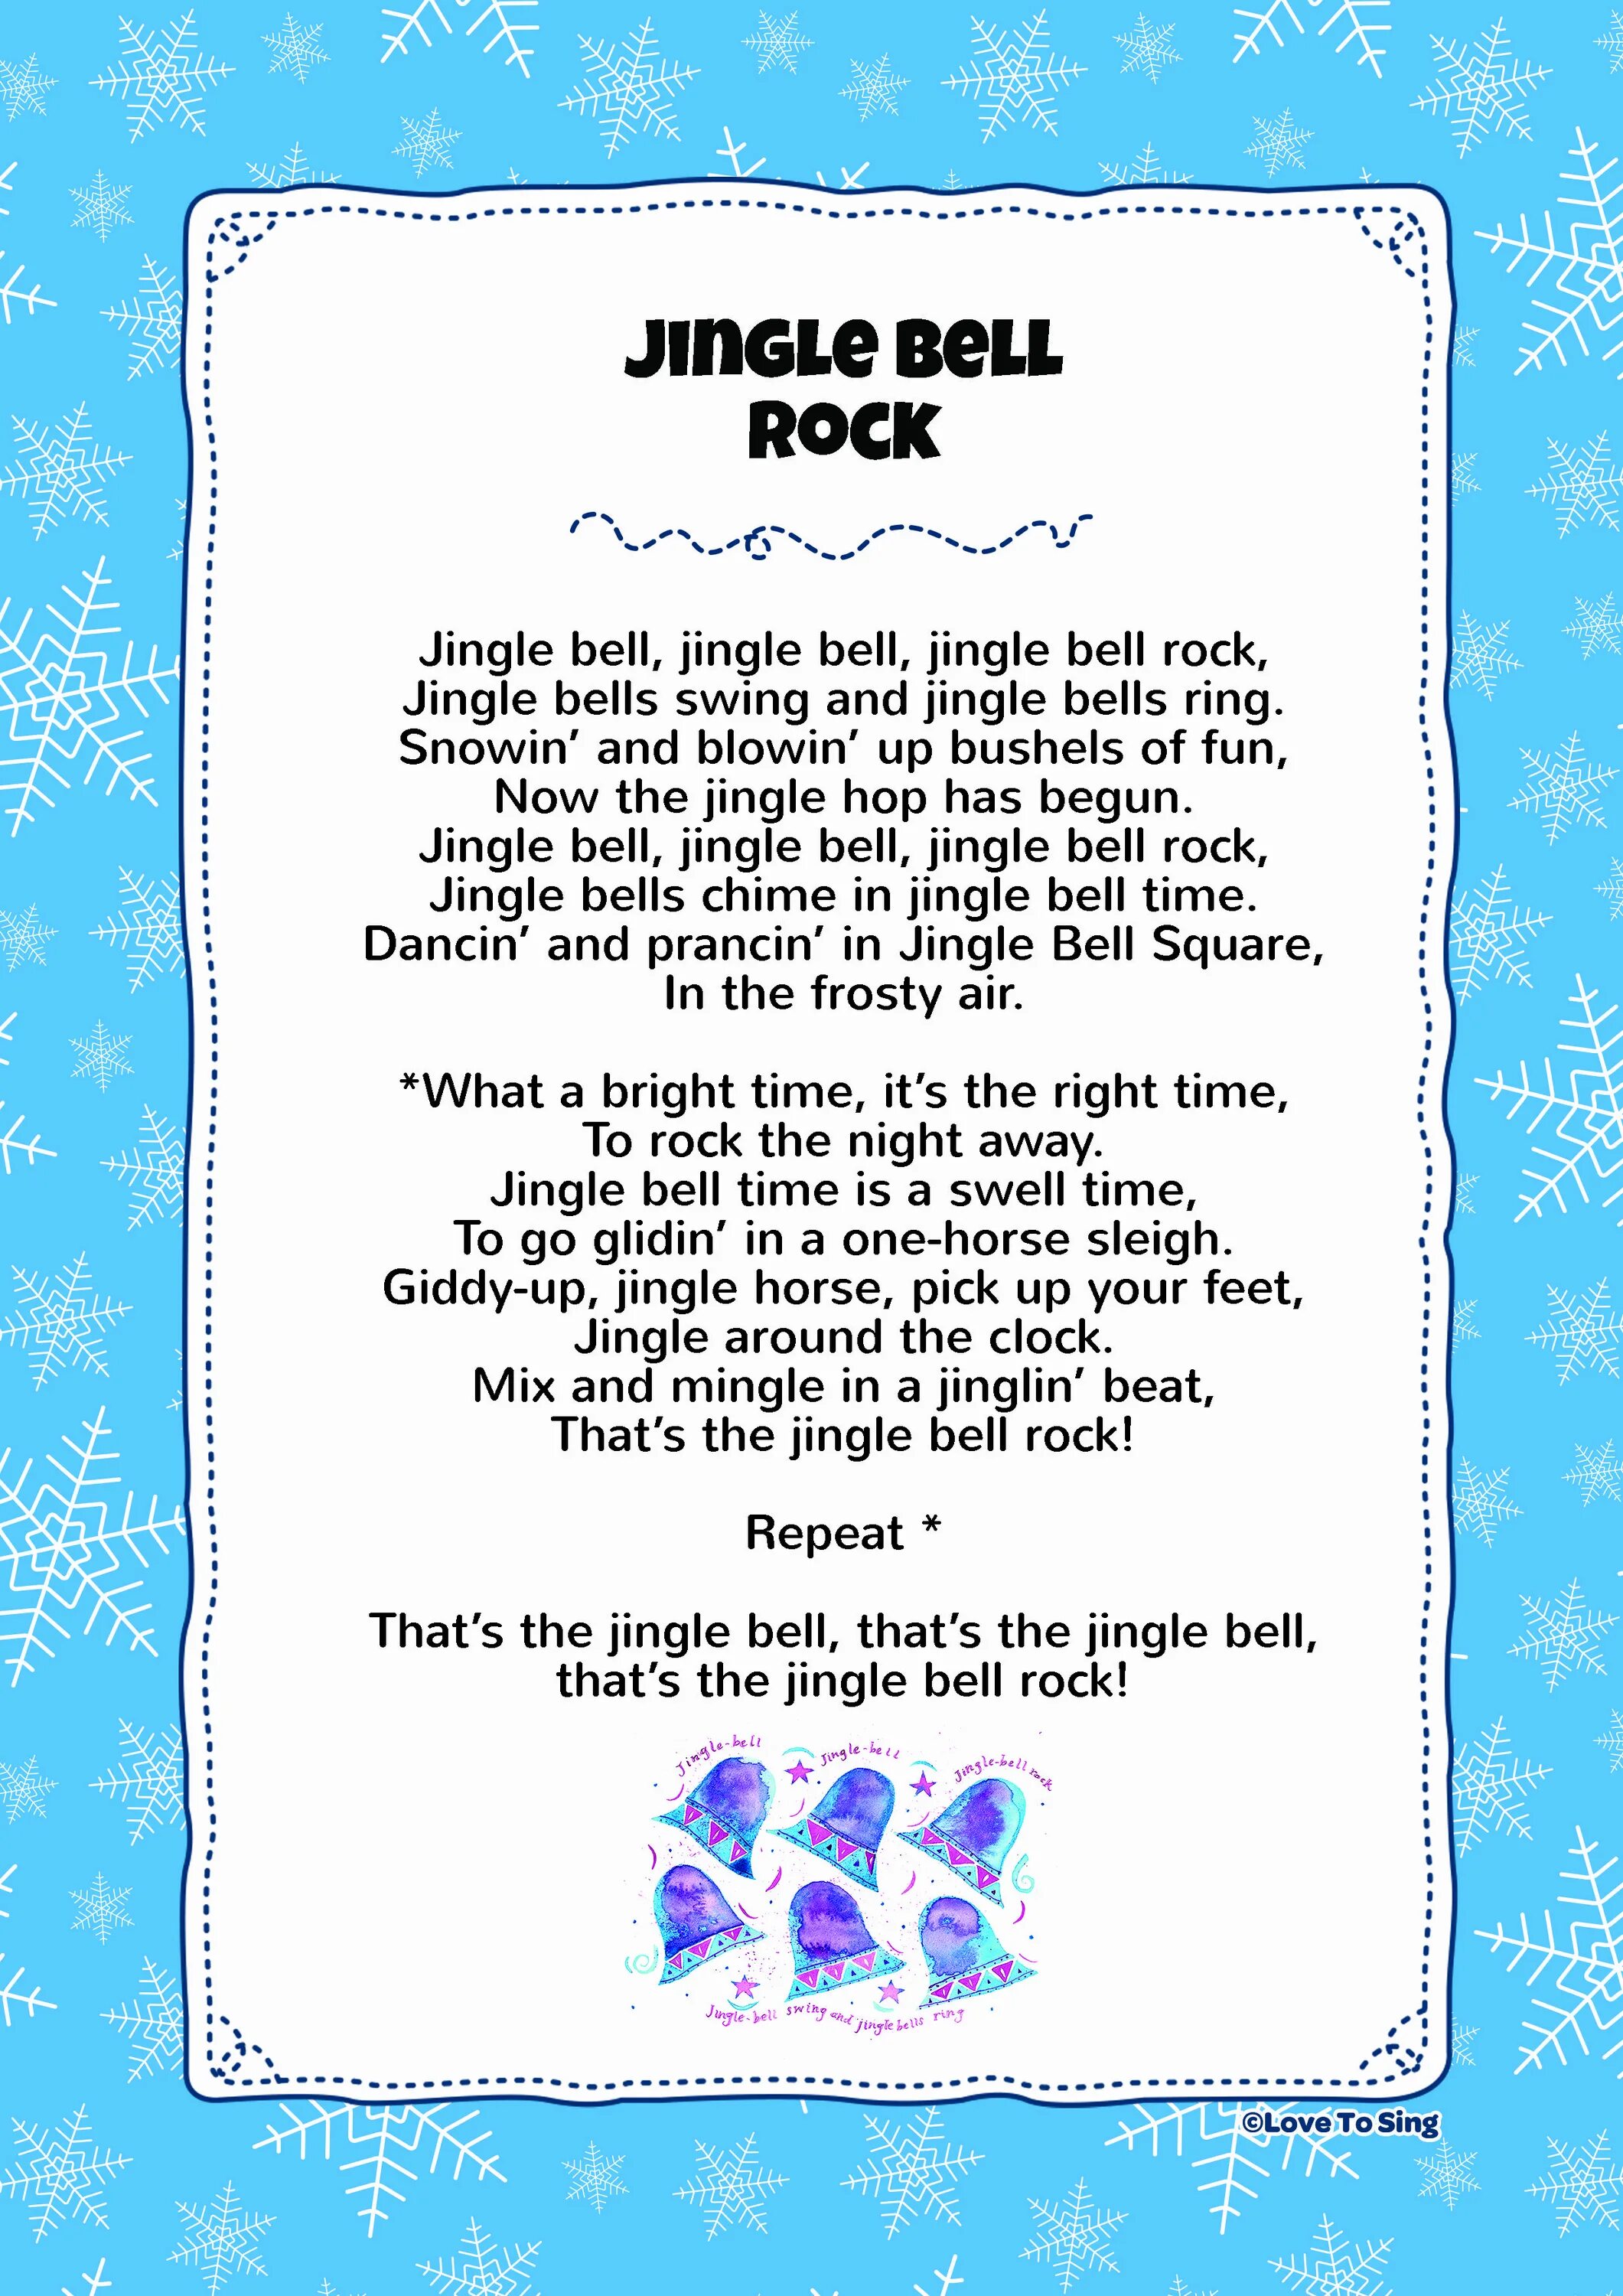 Белс слова. Jingle Bells Rock слова. Джингл белс рок. Jingle Bells Jingle Bells Jingle Bells Rock текст. Текст песни Jingle Bells Rock.